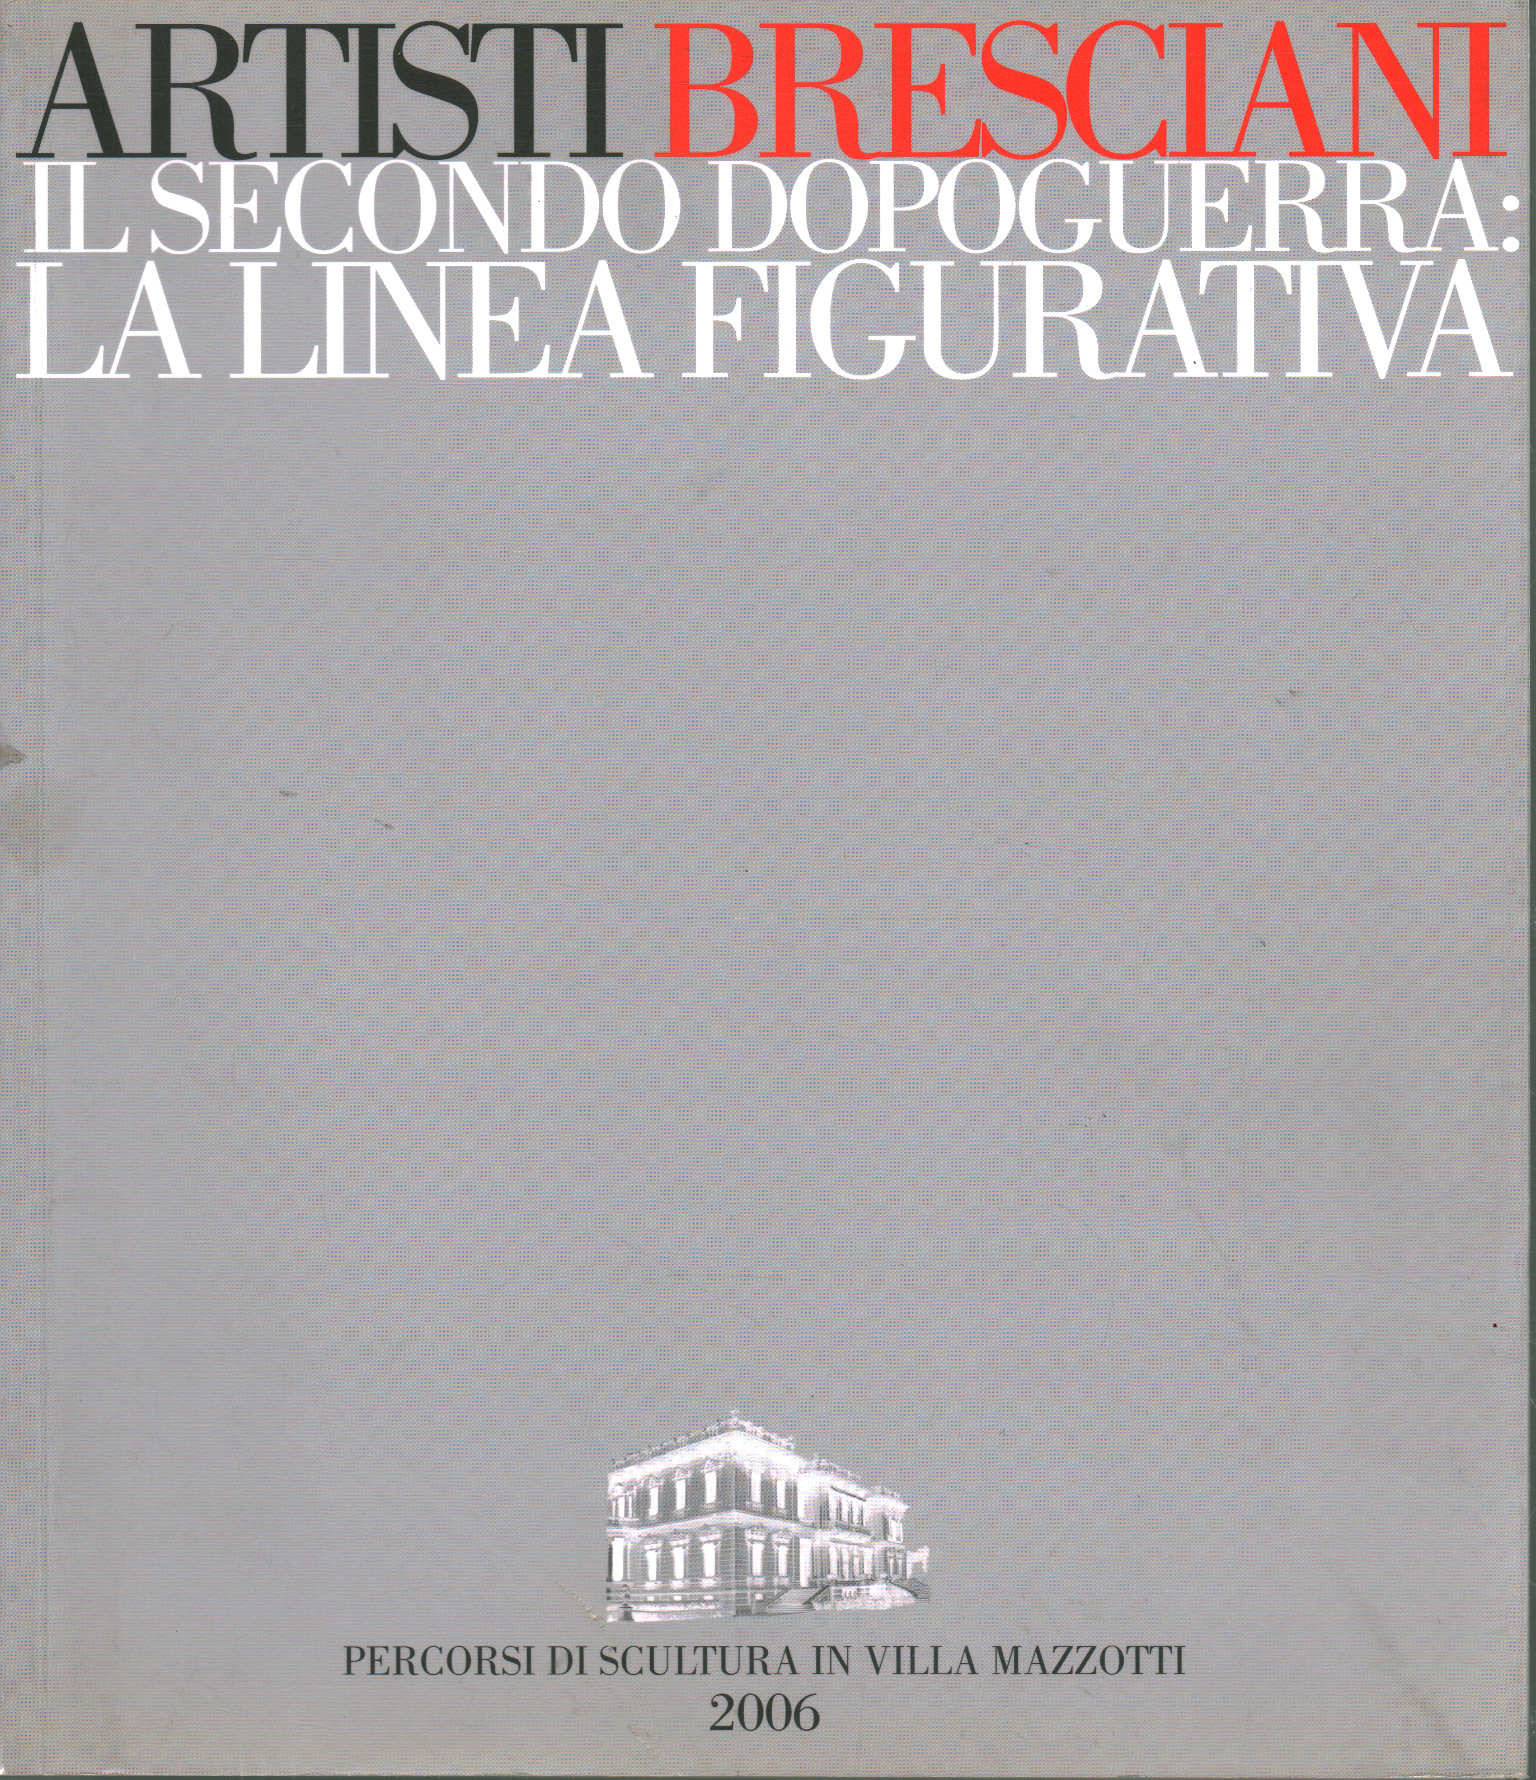 The second post-war period in Brescia: The figured line, Mauro Corradini